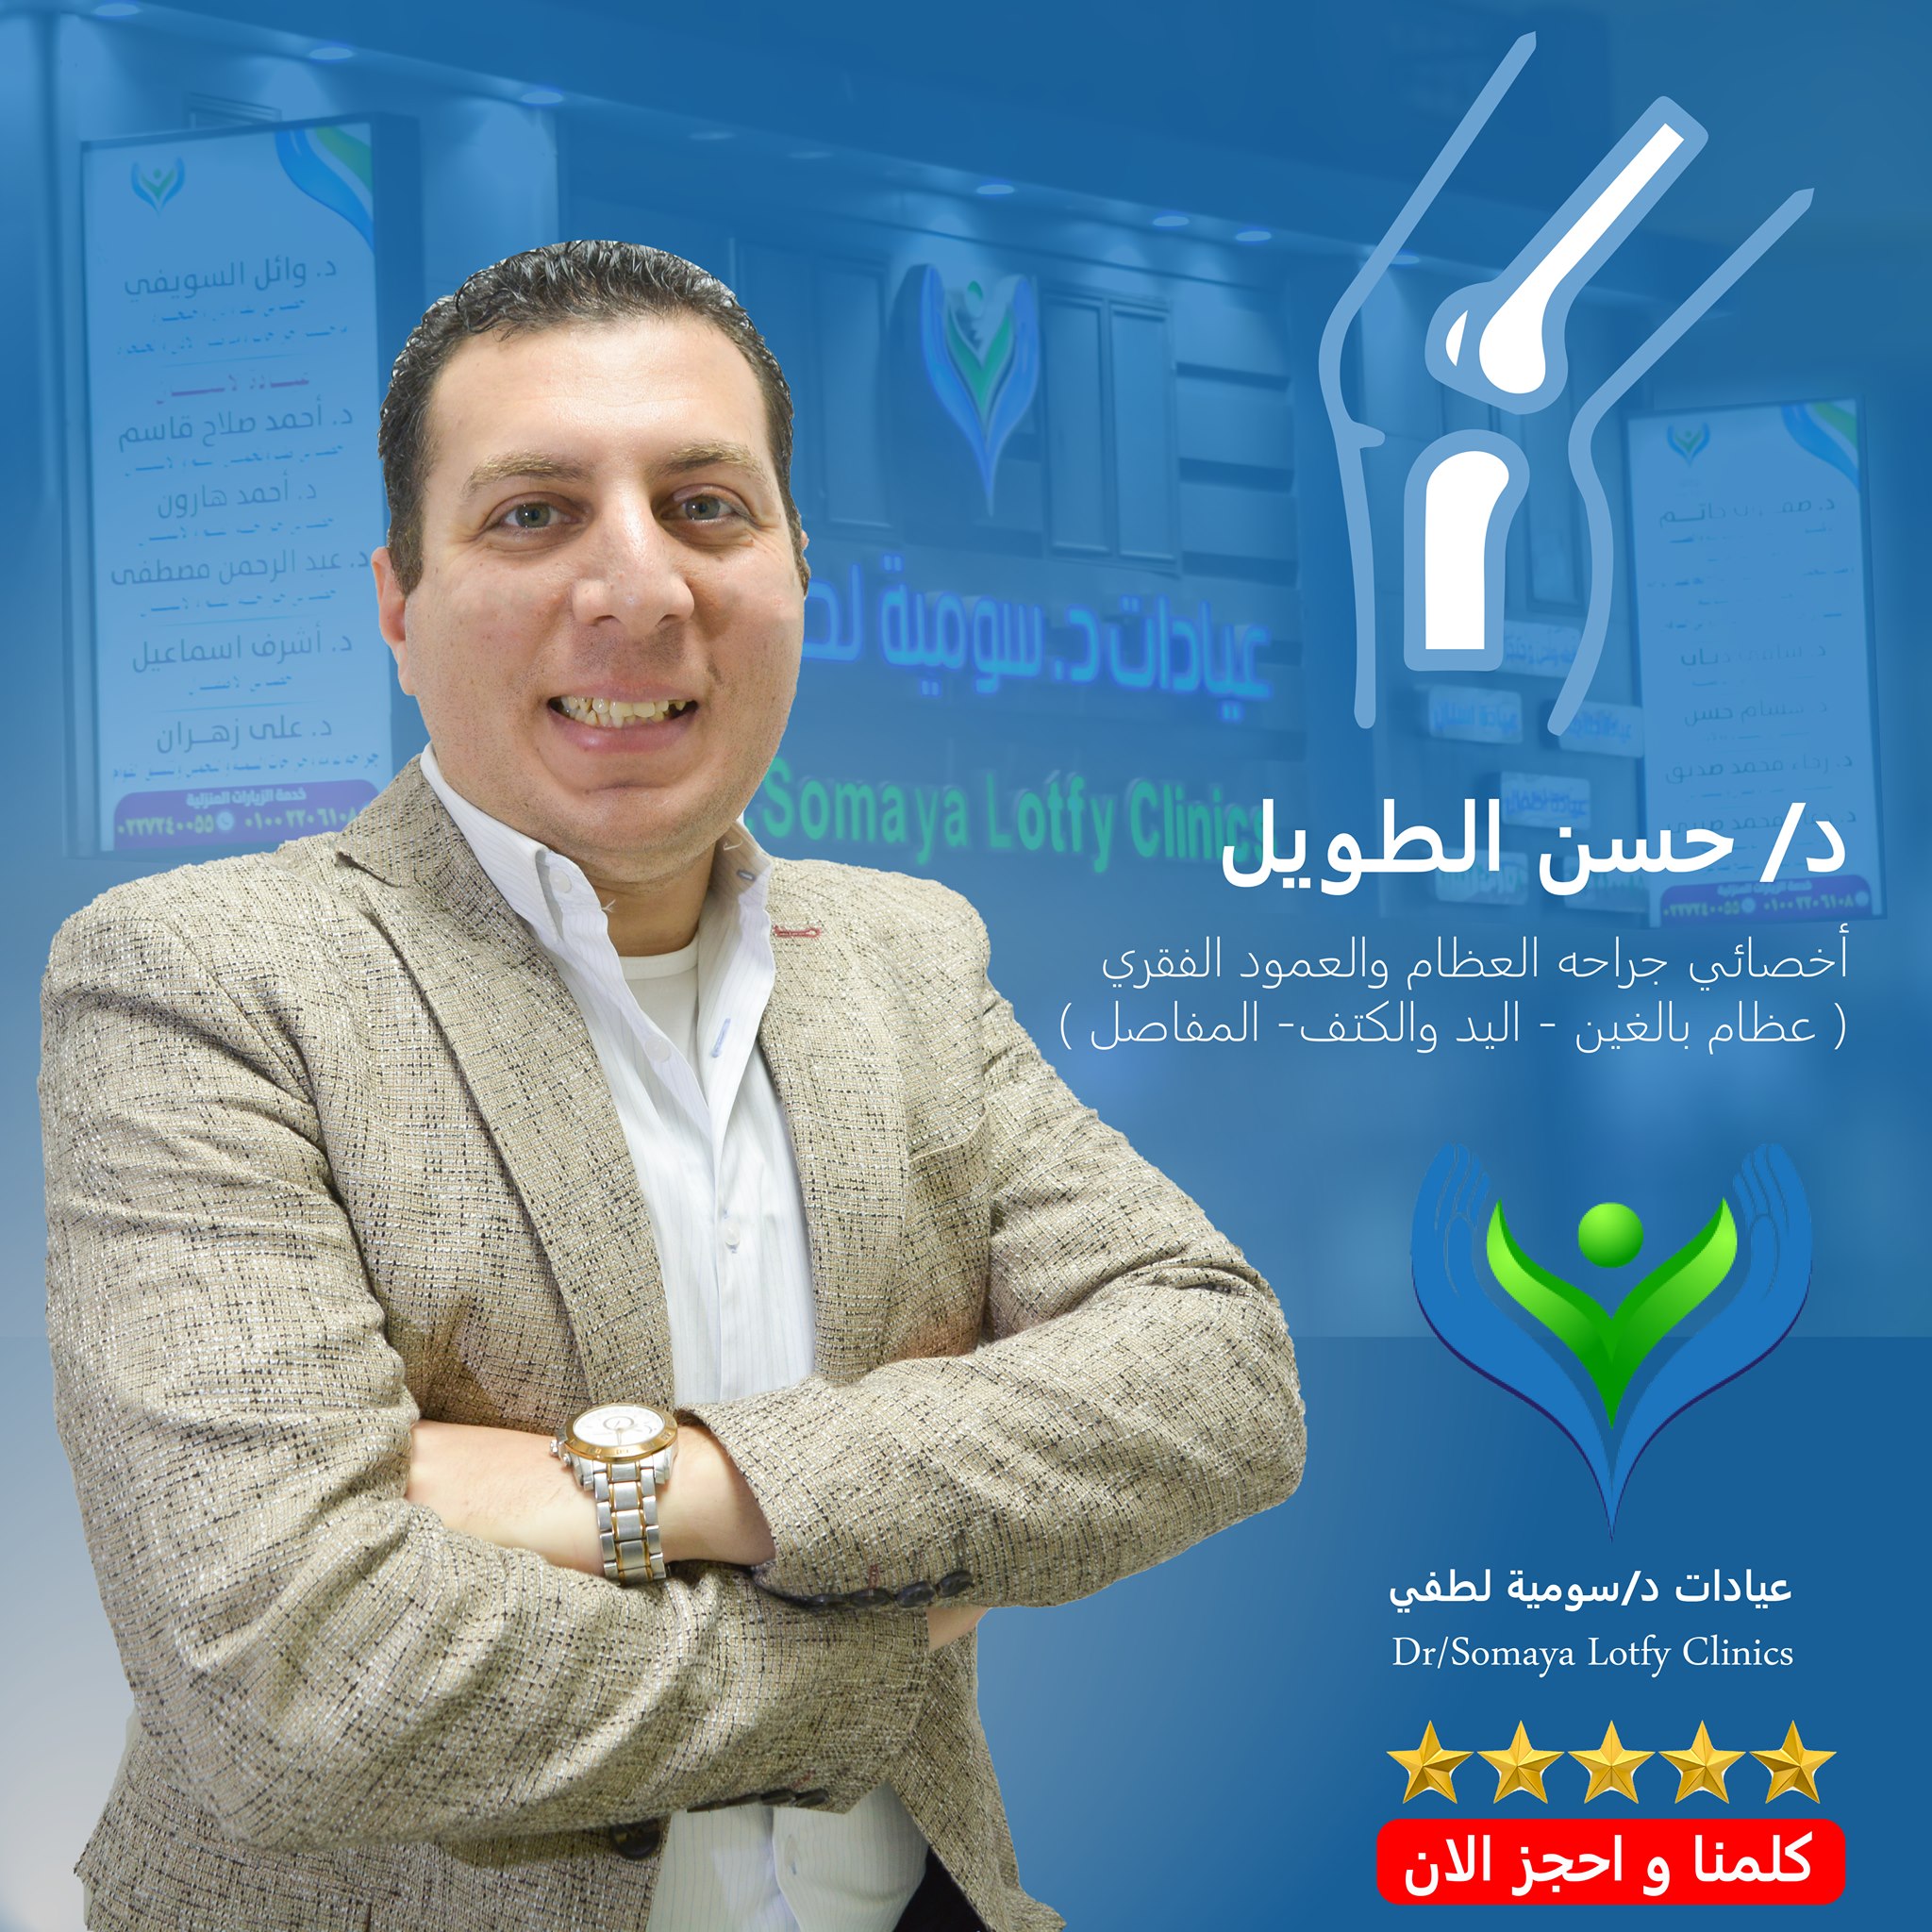 Dr. Hassan El Taweel